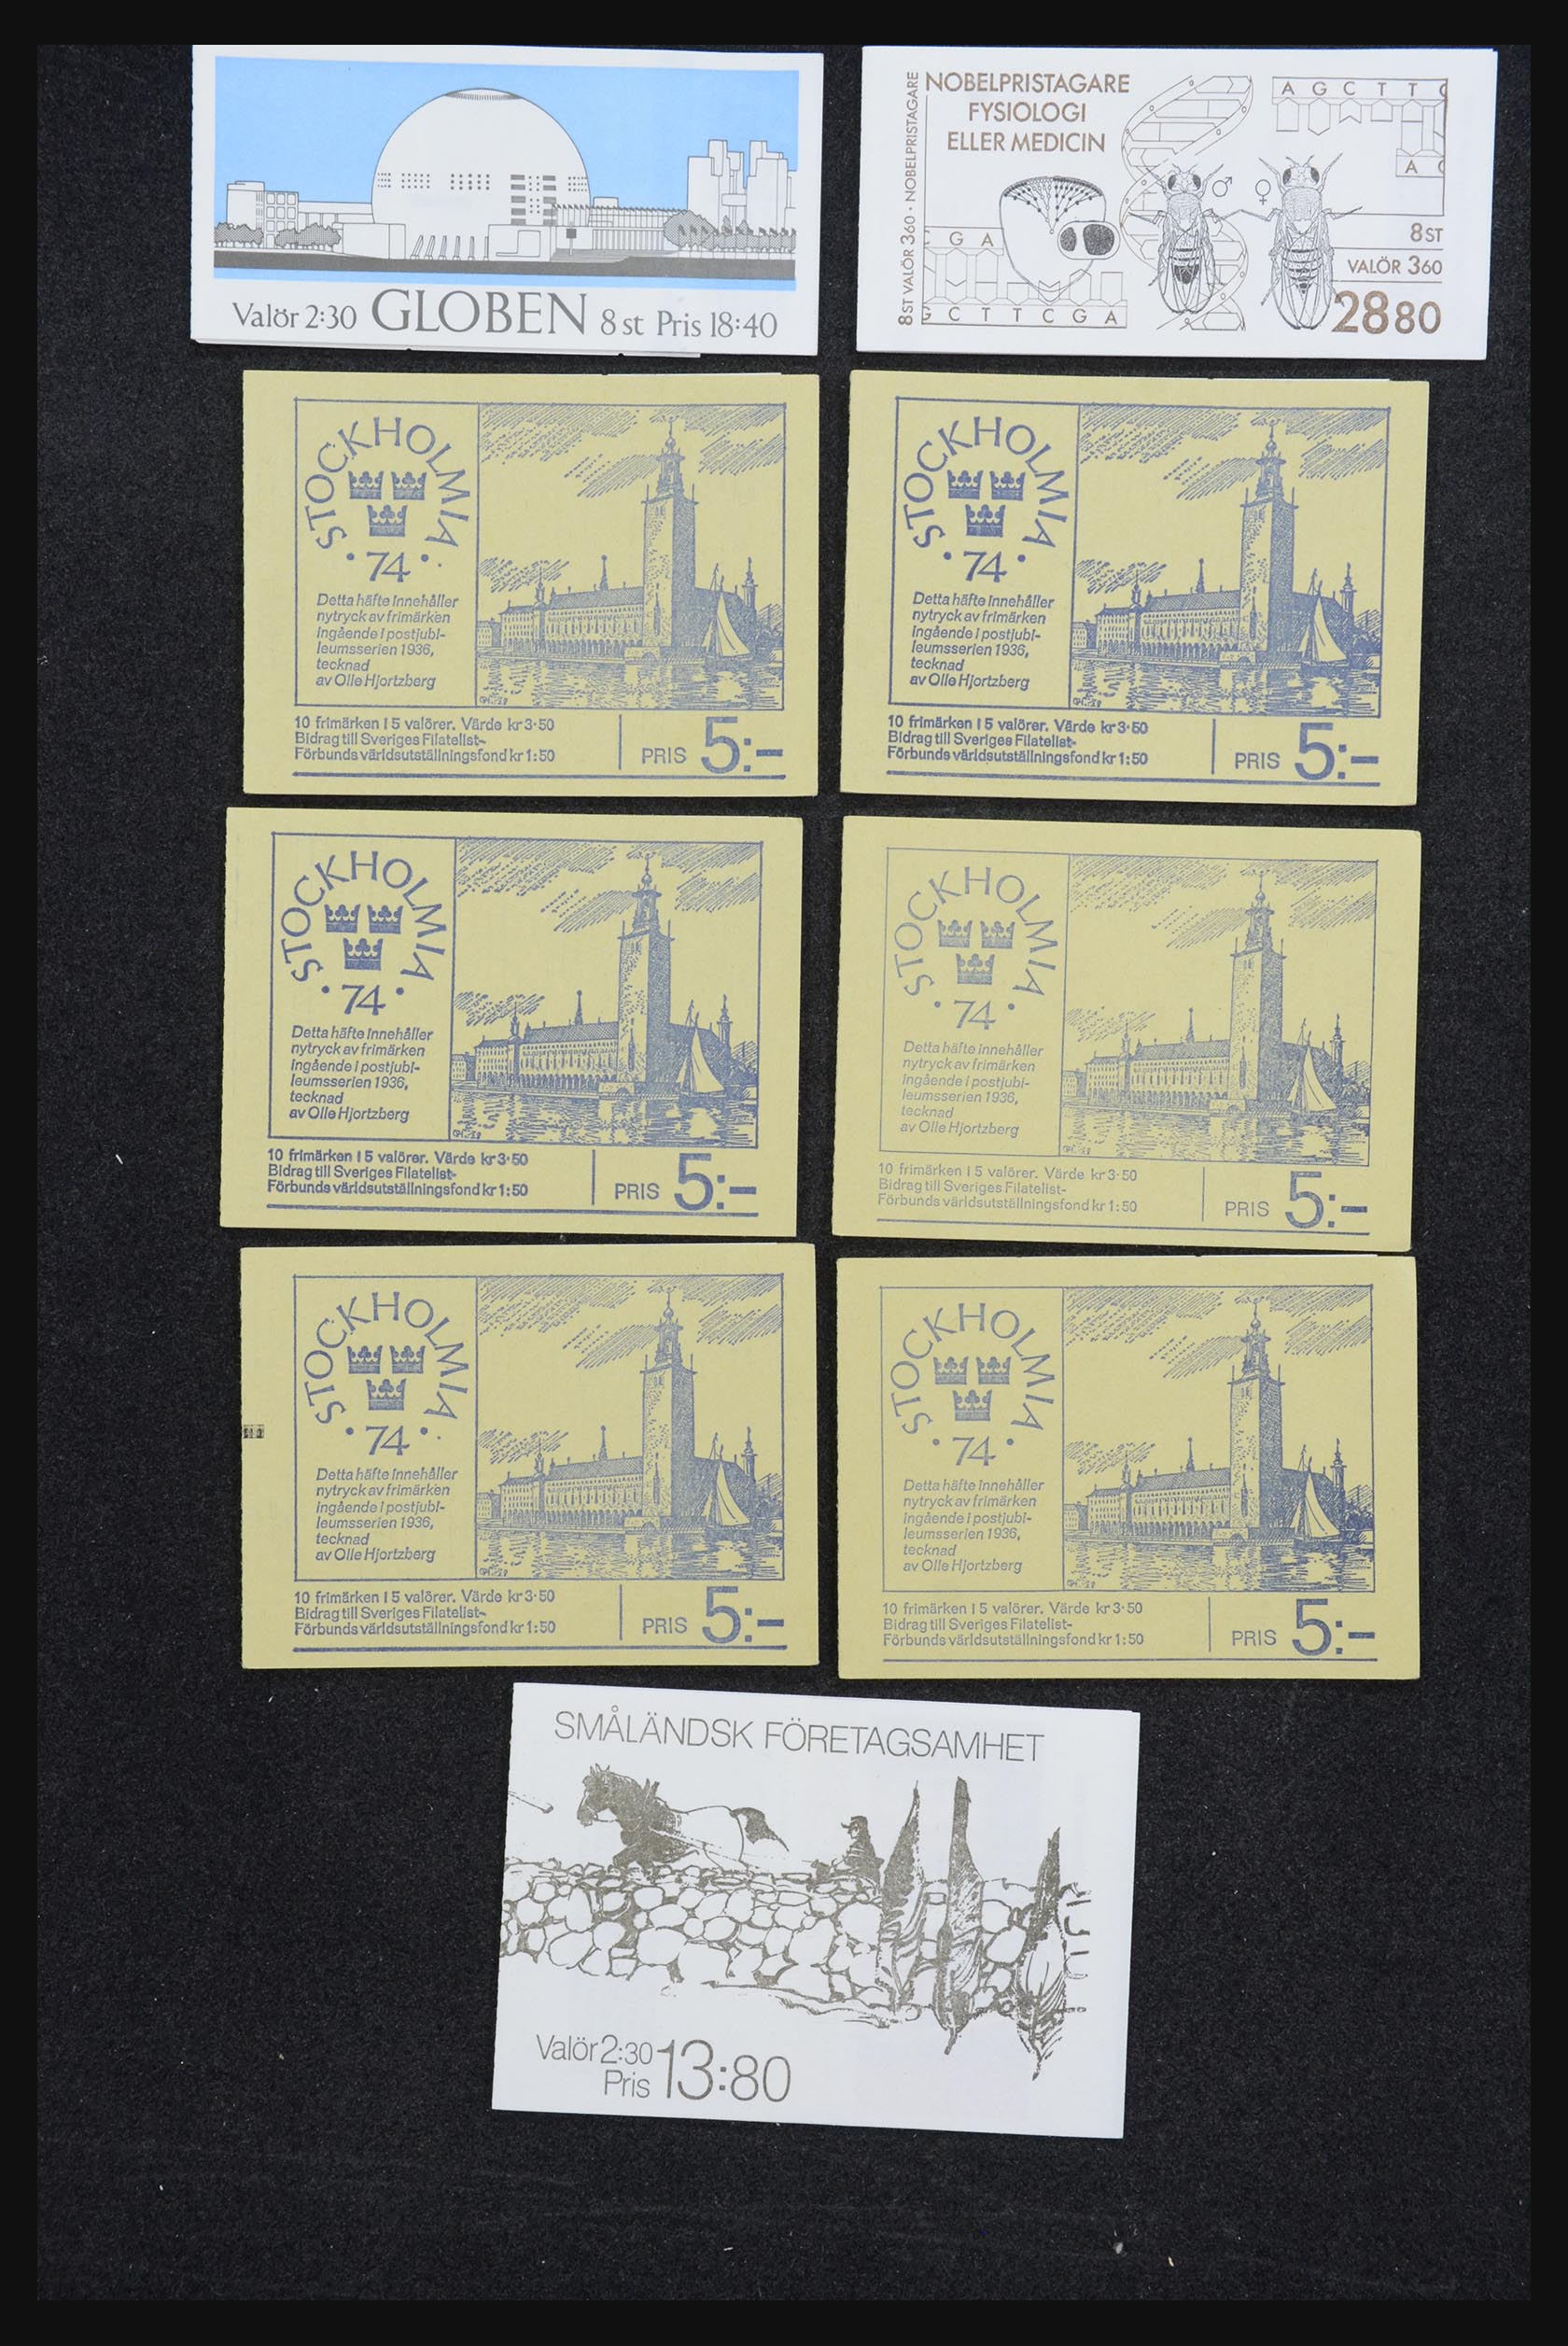 32026 033 - 32026 Sweden stampbooklets 1949-1990.